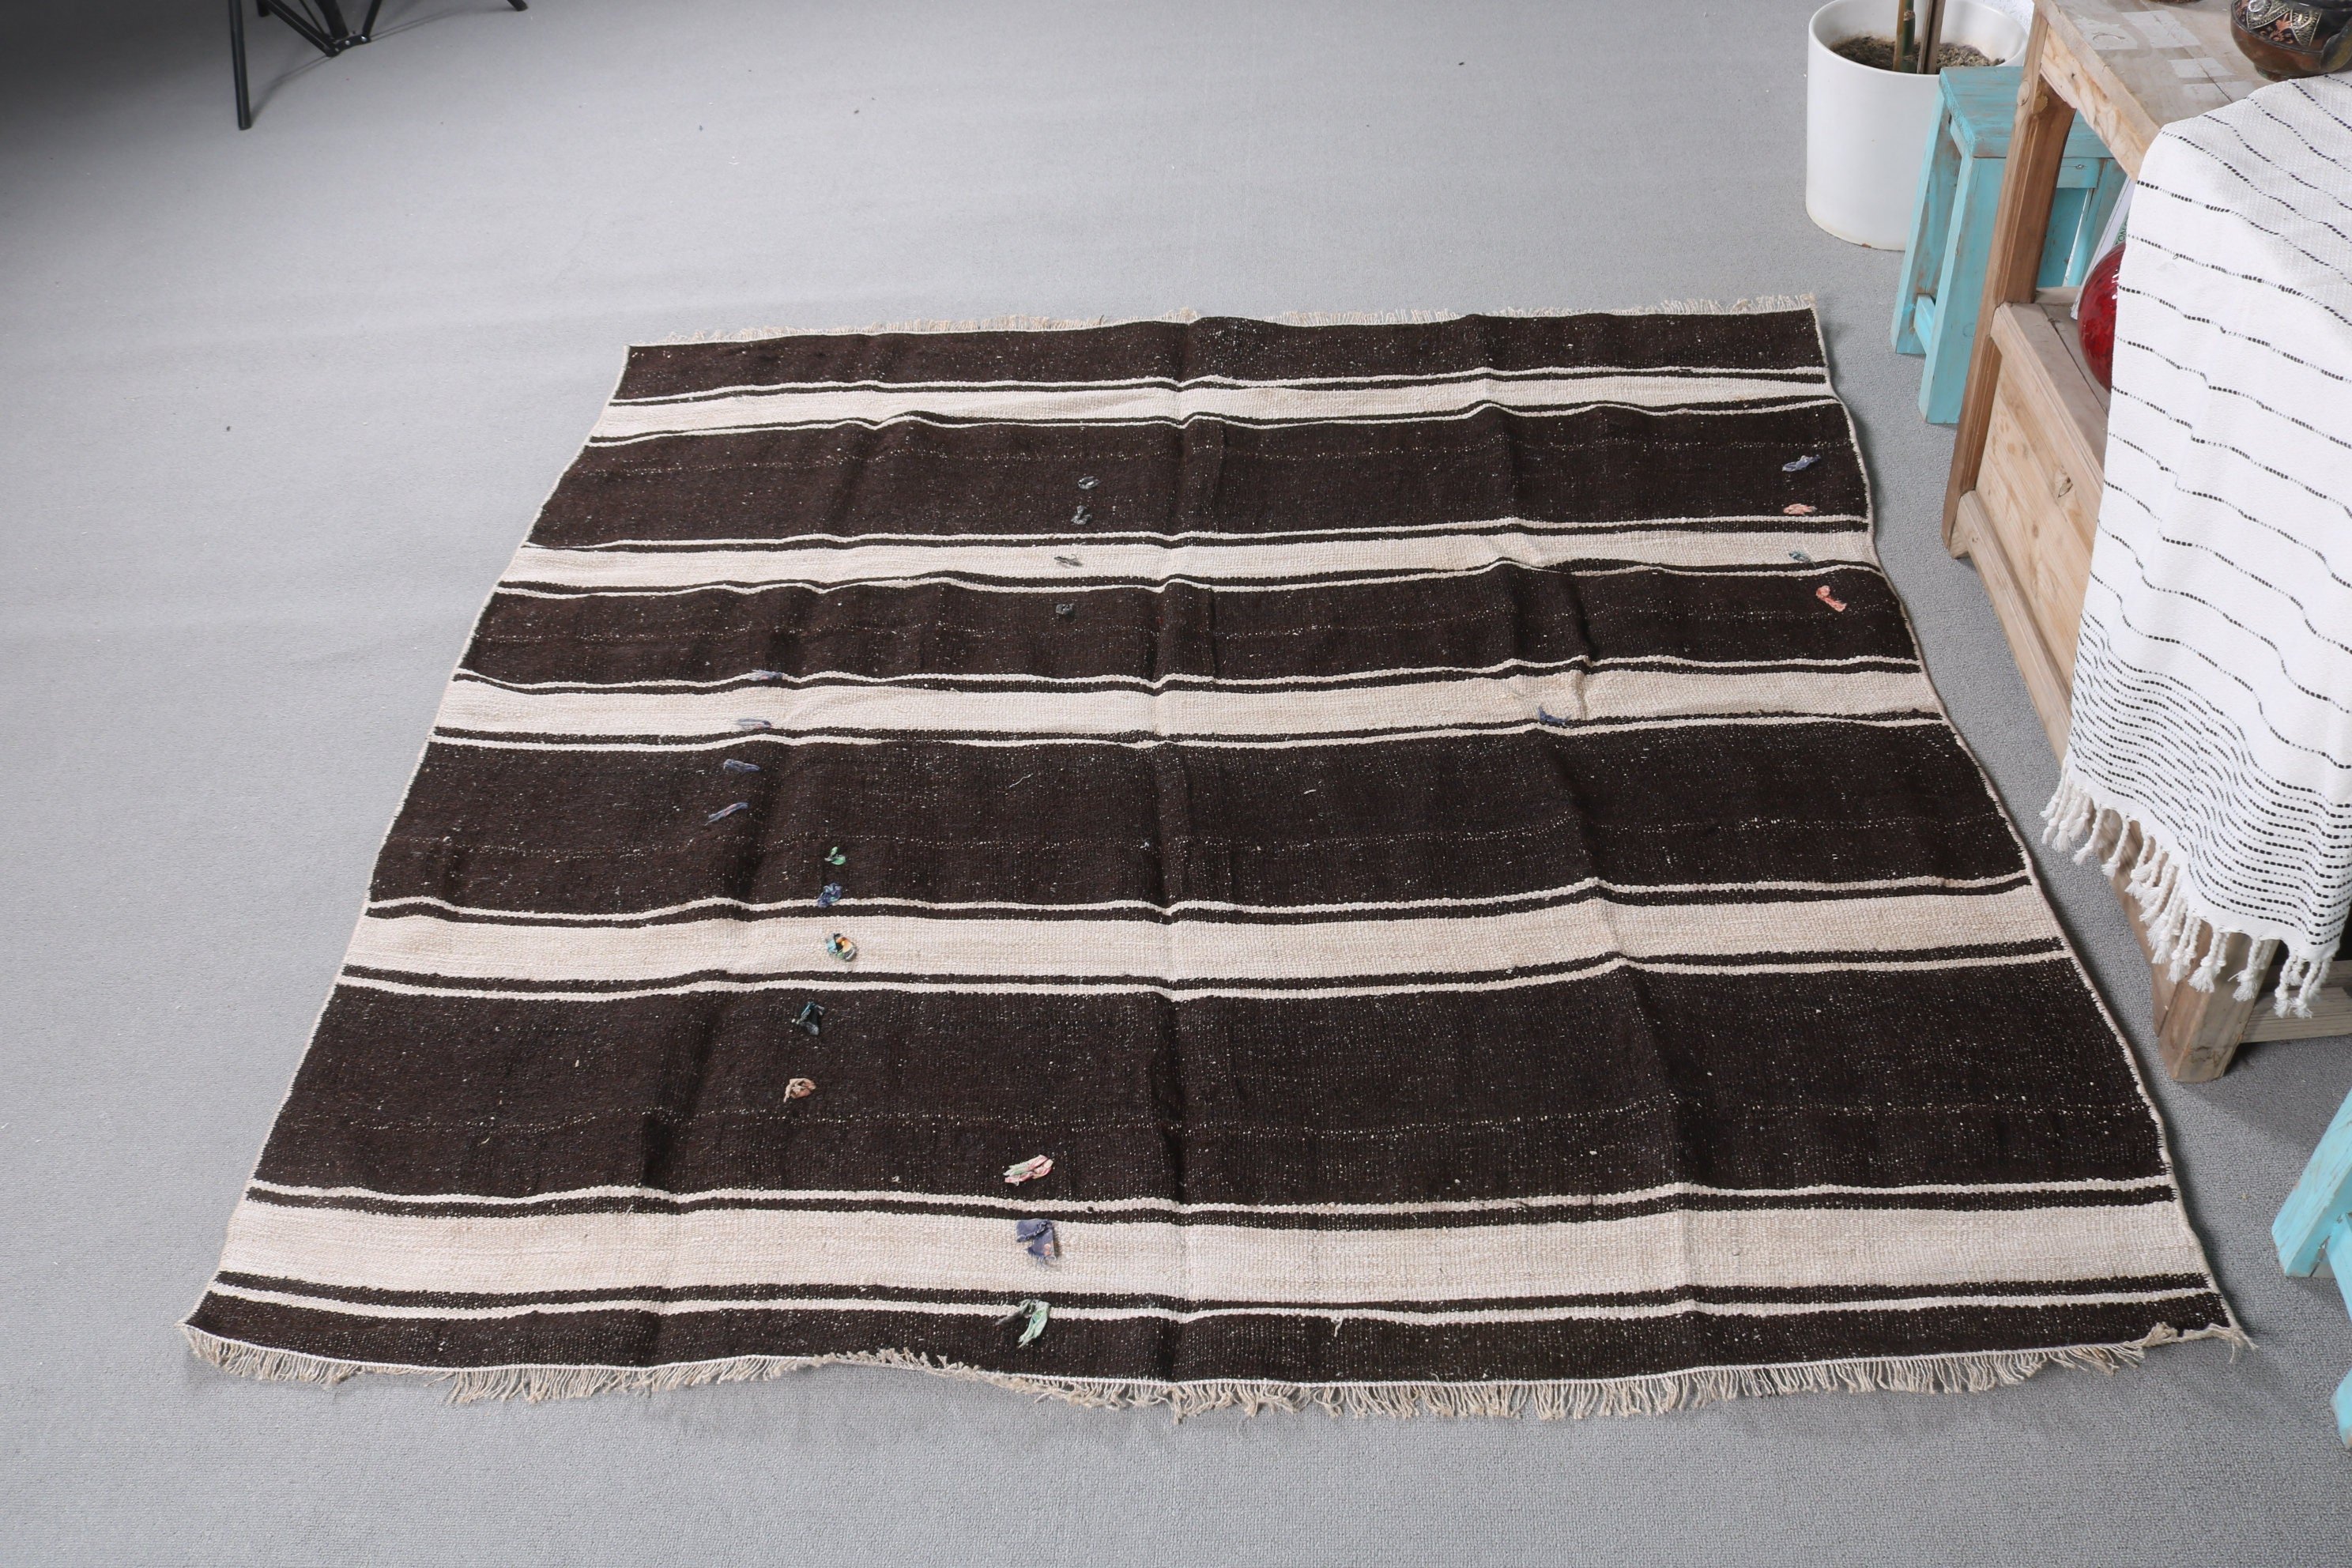 Oriental Rugs, Bedroom Rug, Kilim, Dining Room Rug, Vintage Rug, 5.2x5.2 ft Area Rug, Turkish Rugs, Brown Wool Rugs, Art Rug, Nursery Rugs